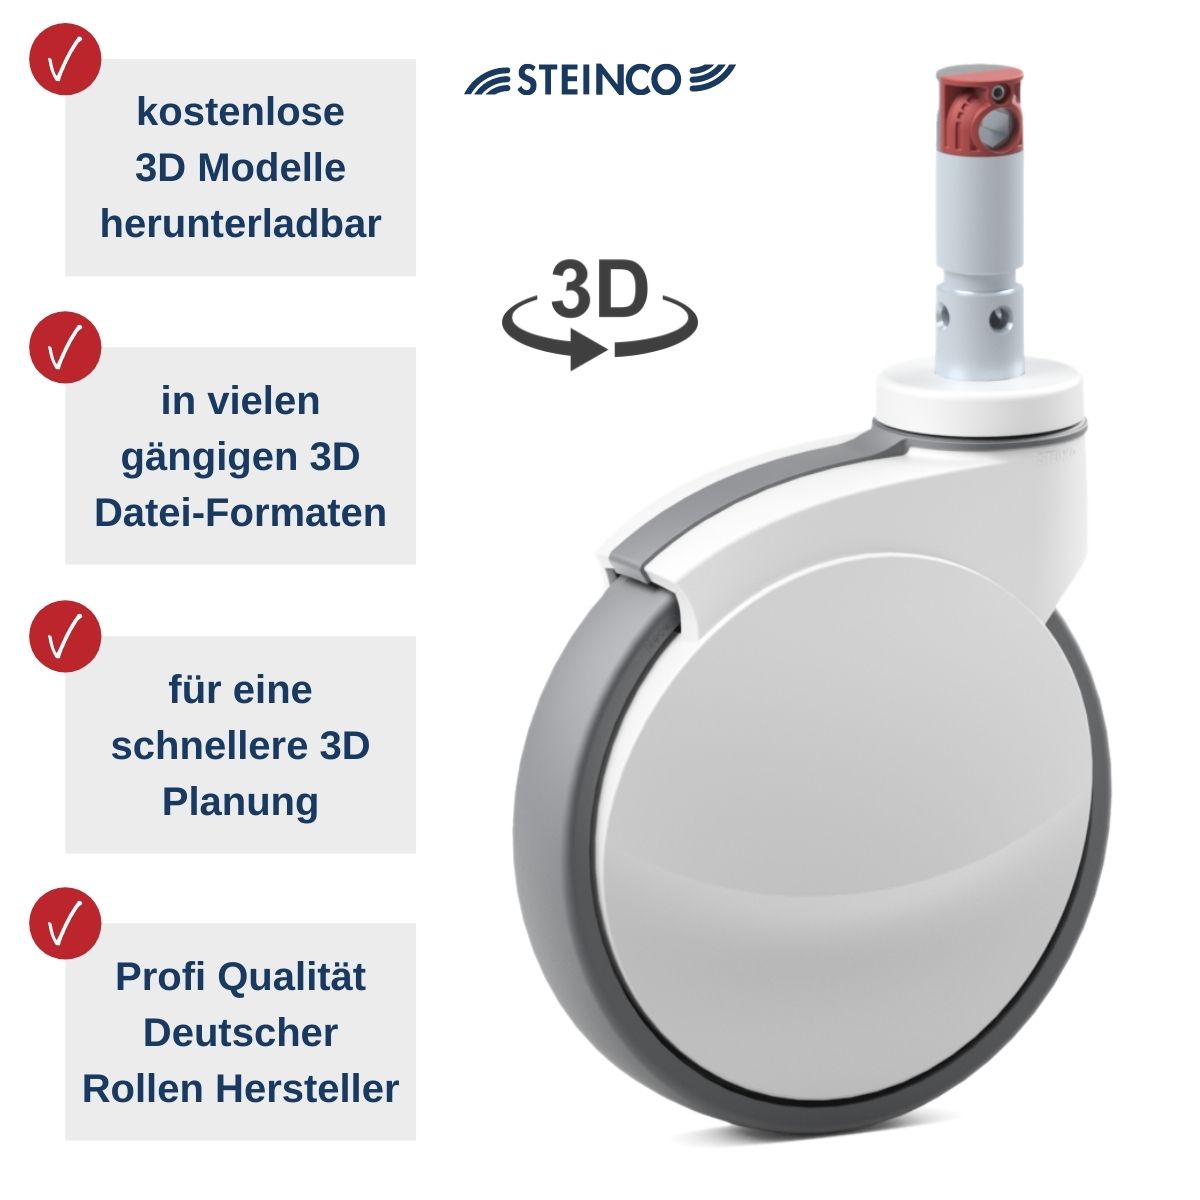 [Translate to Dänisch:] Steinco Medical Rollen - kostenlose 3D Modelle in vielen Dateiformaten für Planer, Konstrukteure, Projekteure und Produktentwickler